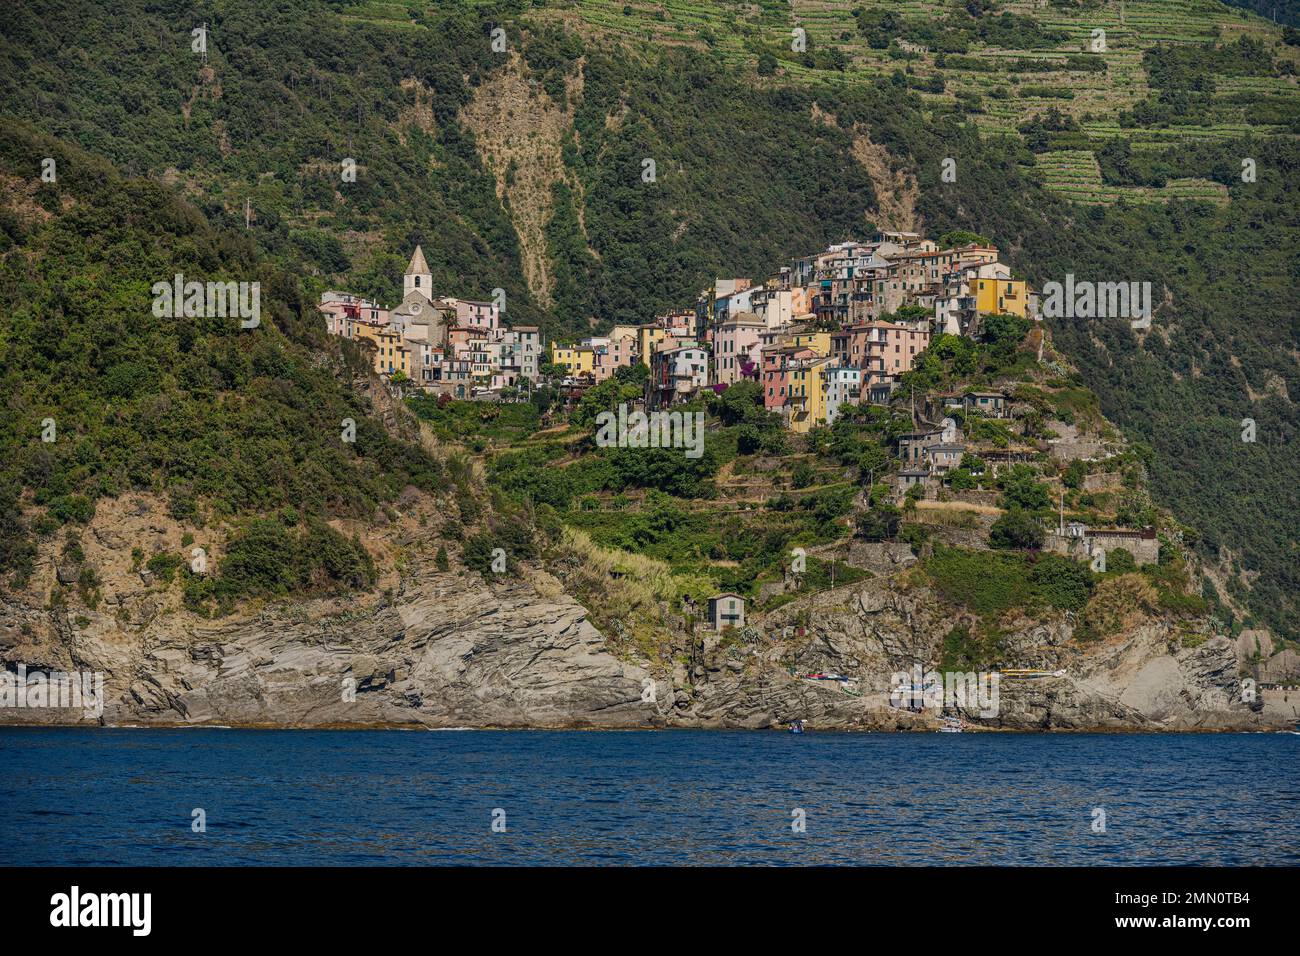 Italien, Ligurien, der Nationalpark Cinque Terre, der von der UNESCO zum Weltkulturerbe erklärt wurde, das Dorf Corniglia, das sich auf einer Landzunge mit Blick auf das Mittelmeer in einer Höhe von etwa 100 m befindet Stockfoto